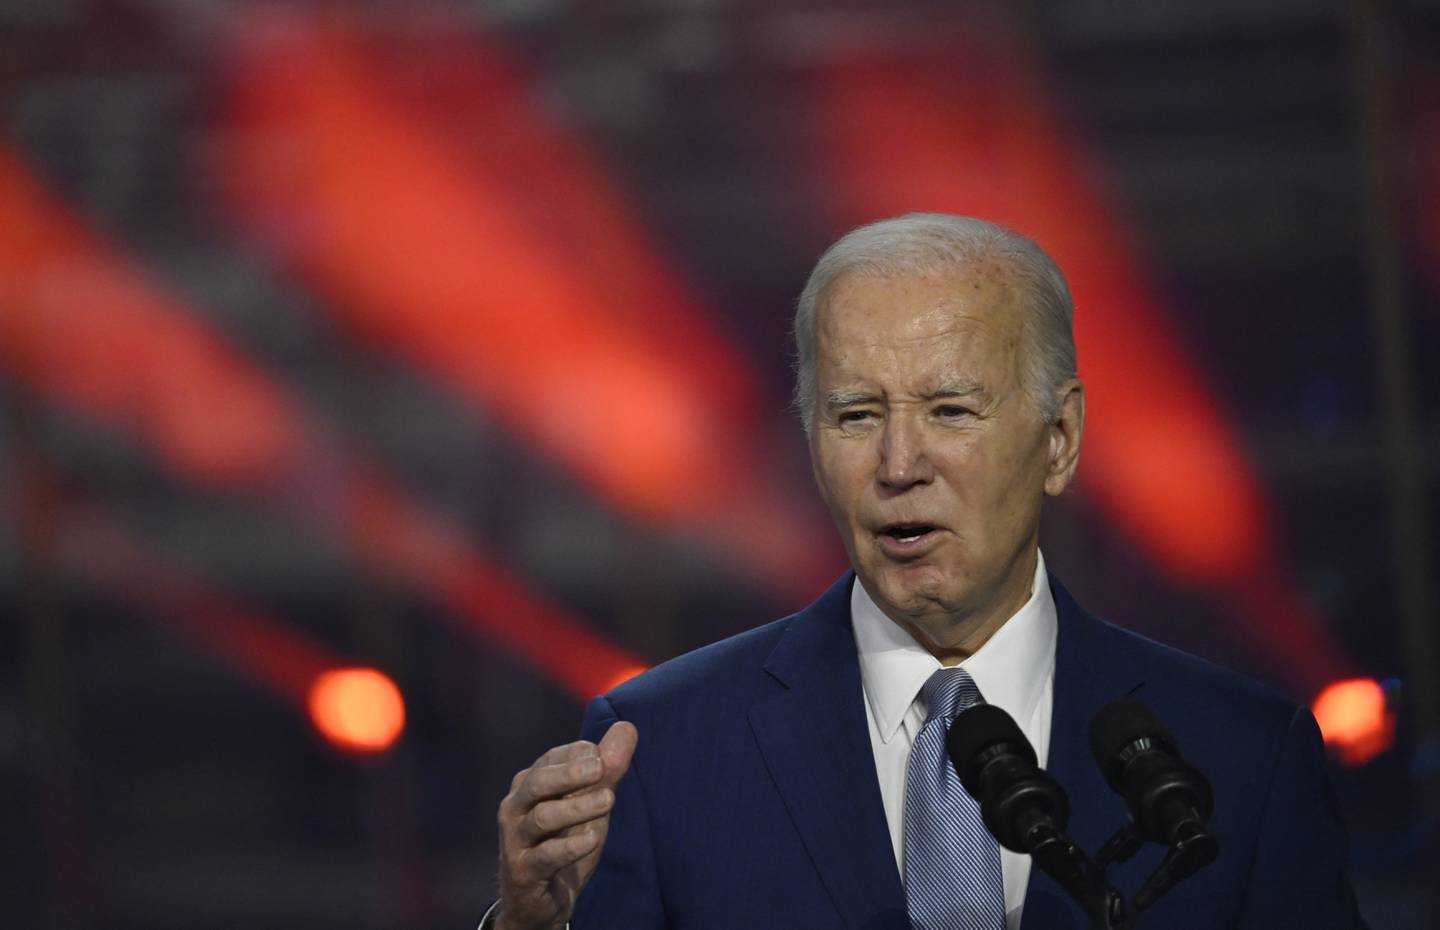 Joe Biden, presidente de los Estados Unidos, es tajante en su apoyo a Israel en medio del conflicto en Oriente Medio.